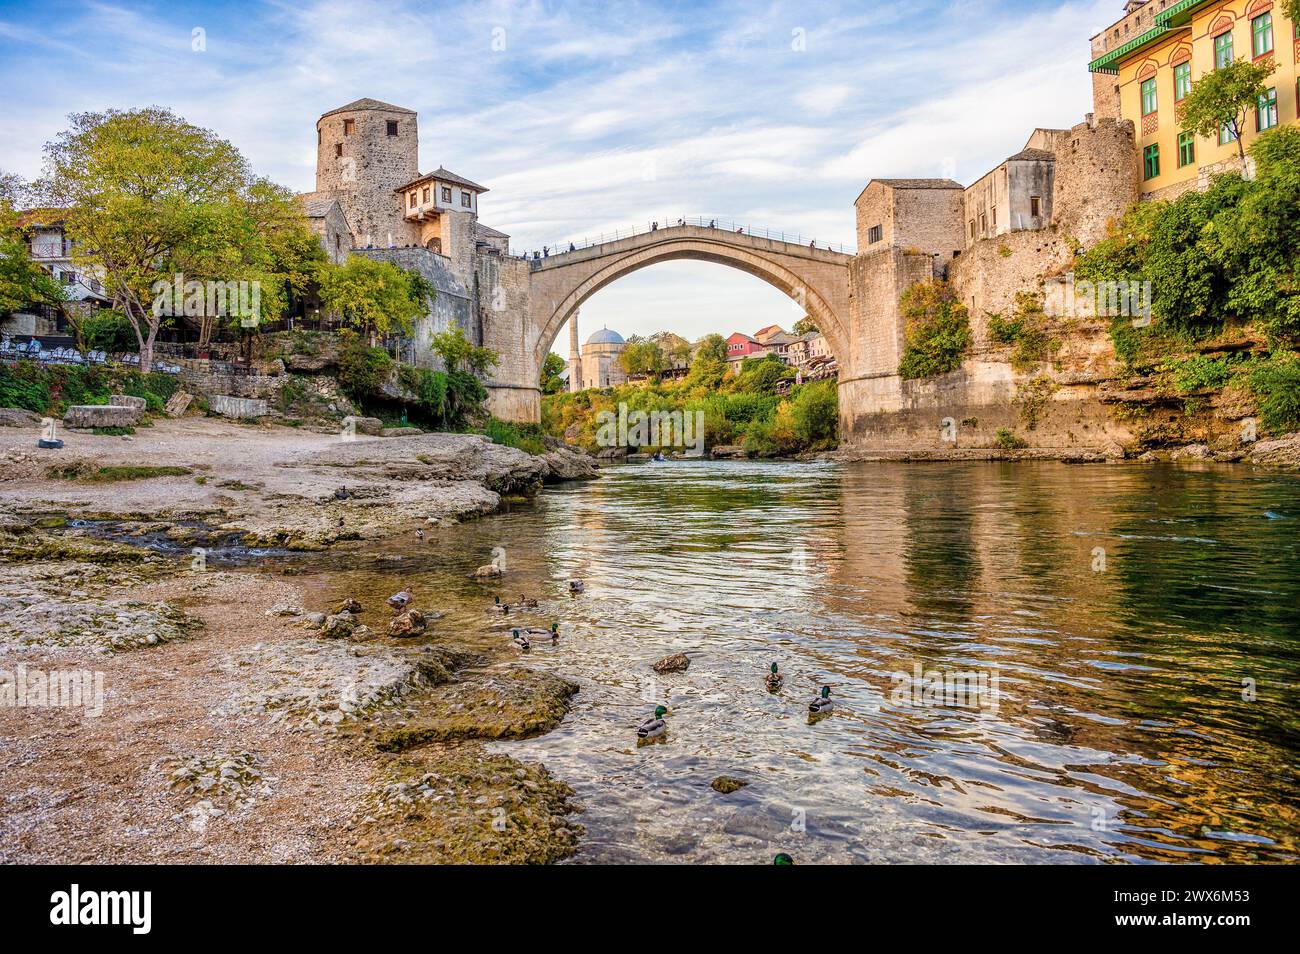 Historische Mostar Bridge, auch bekannt als Stari Most oder Old Bridge in Mostar, Bosnien und Herzegowina. Skyline von Mostar Häusern und Minaretten, bei Sonnenuntergang Stockfoto